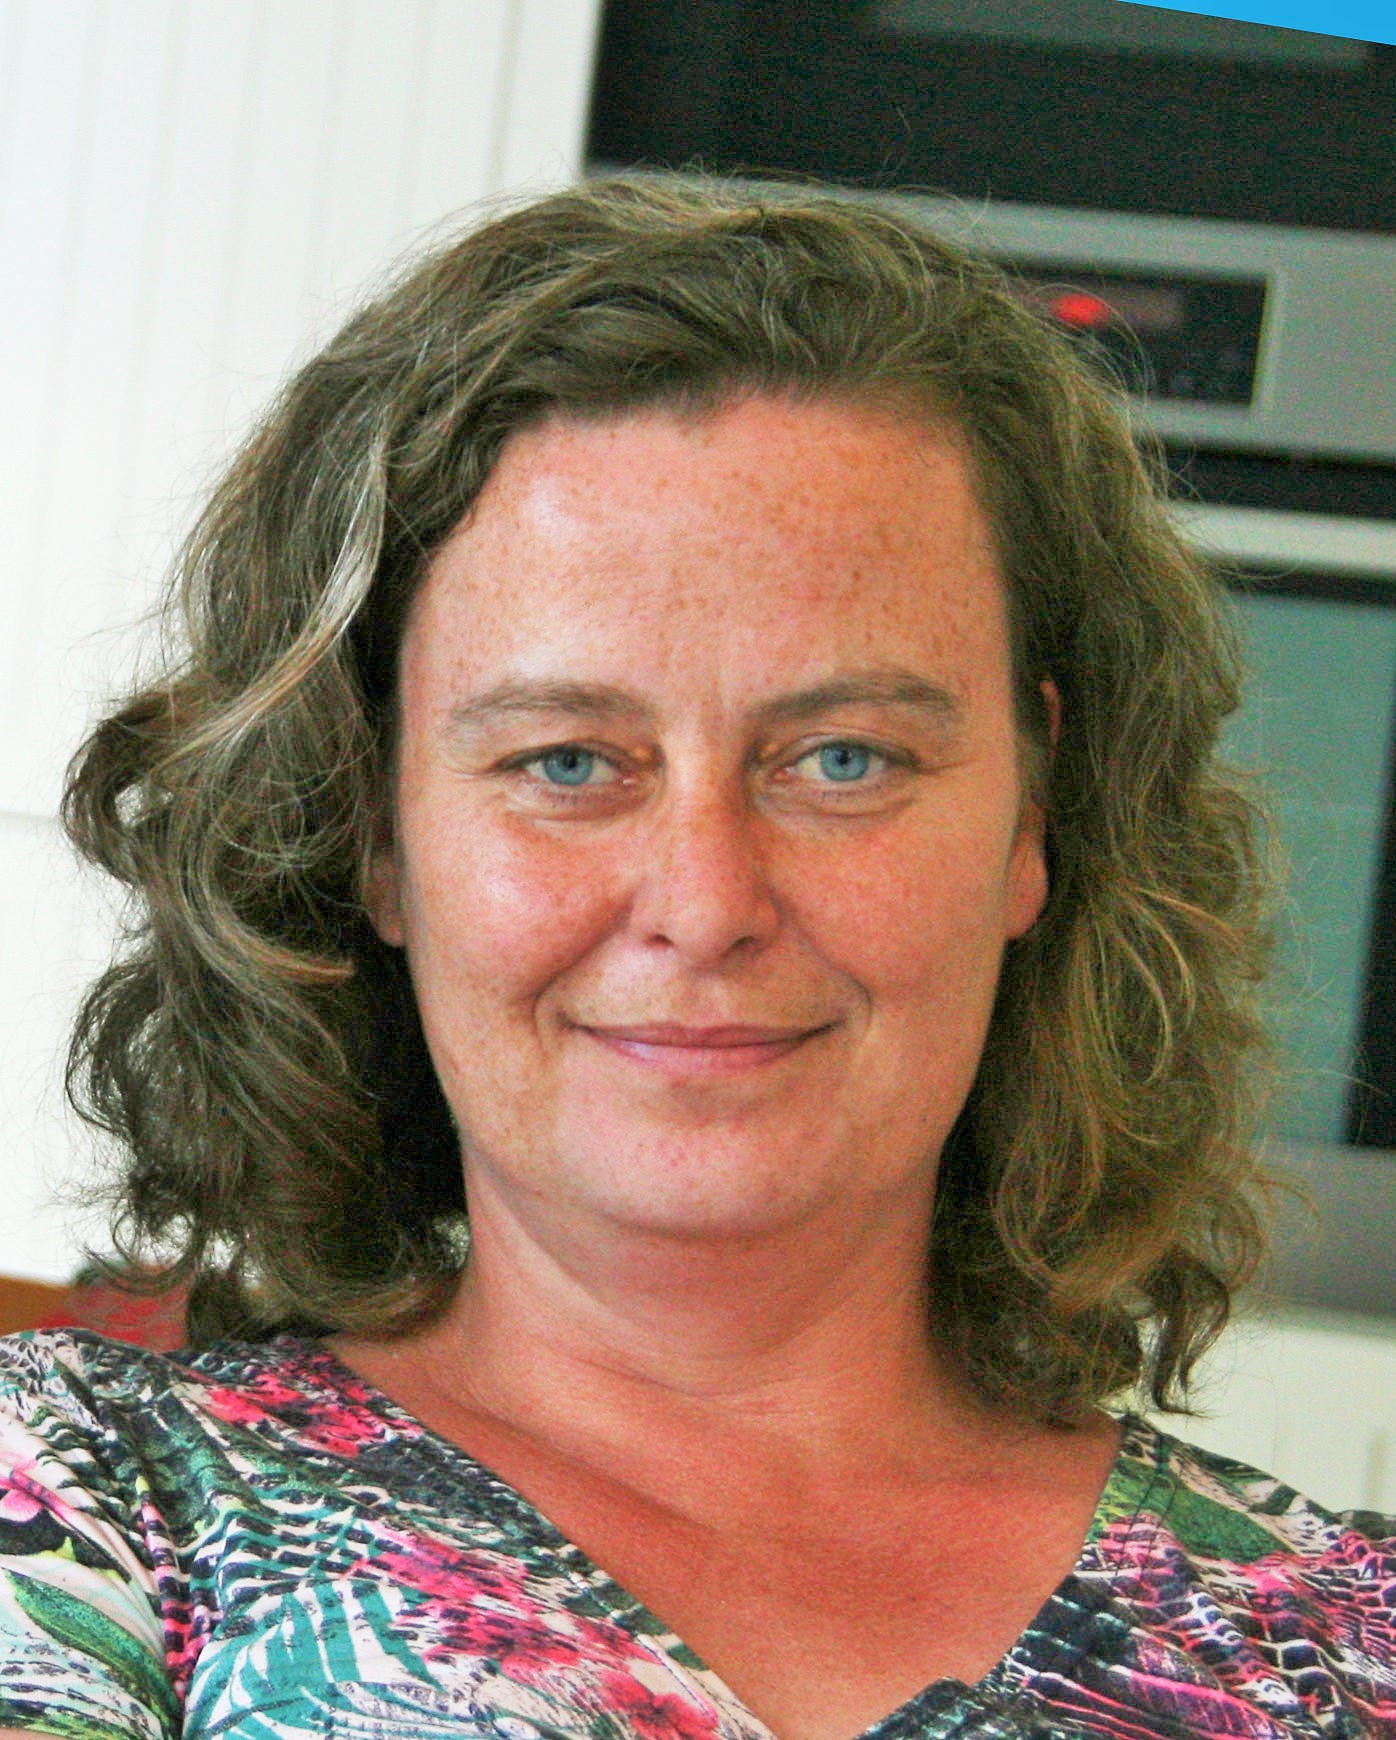 Frieda voorhorst